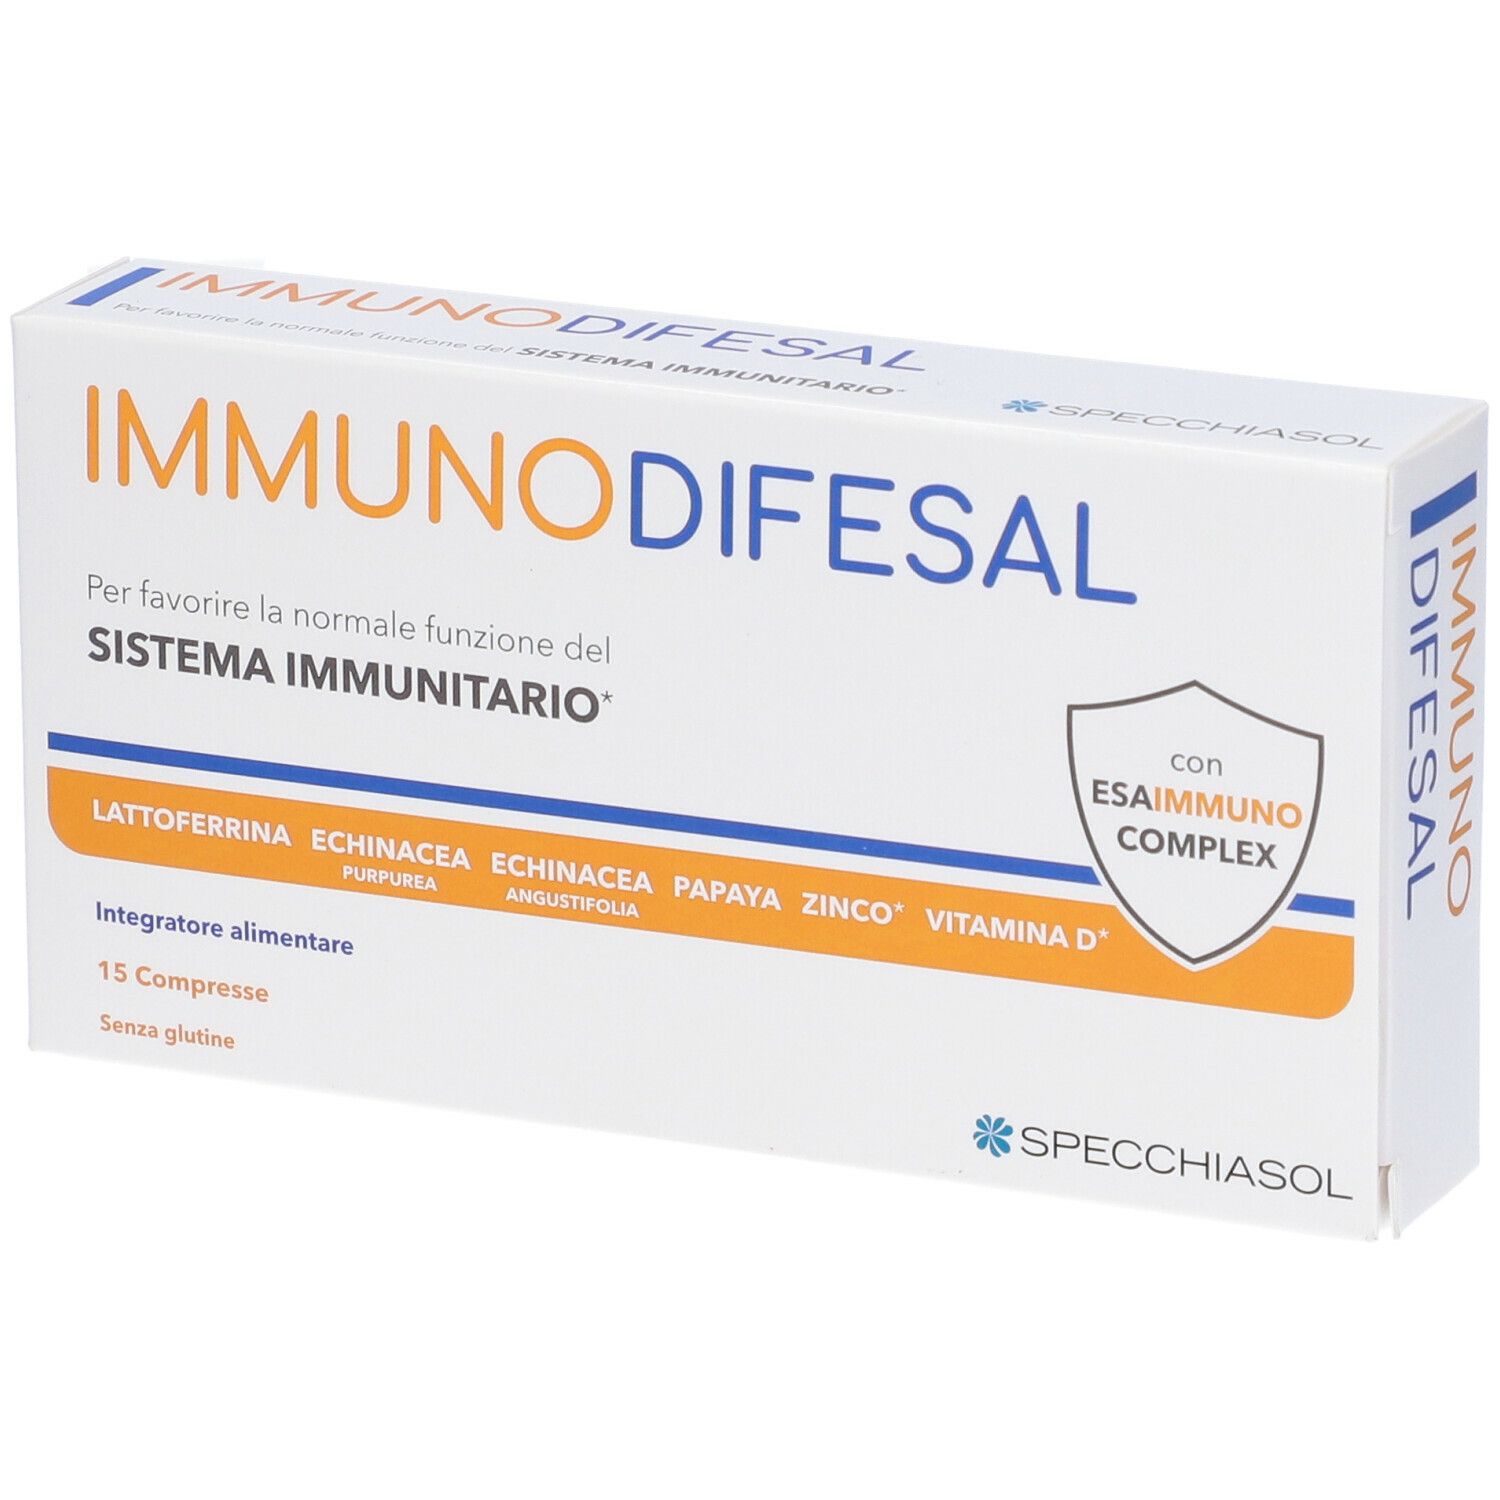 Image of Specchiasol Immunodifesal Integratore Alimentare